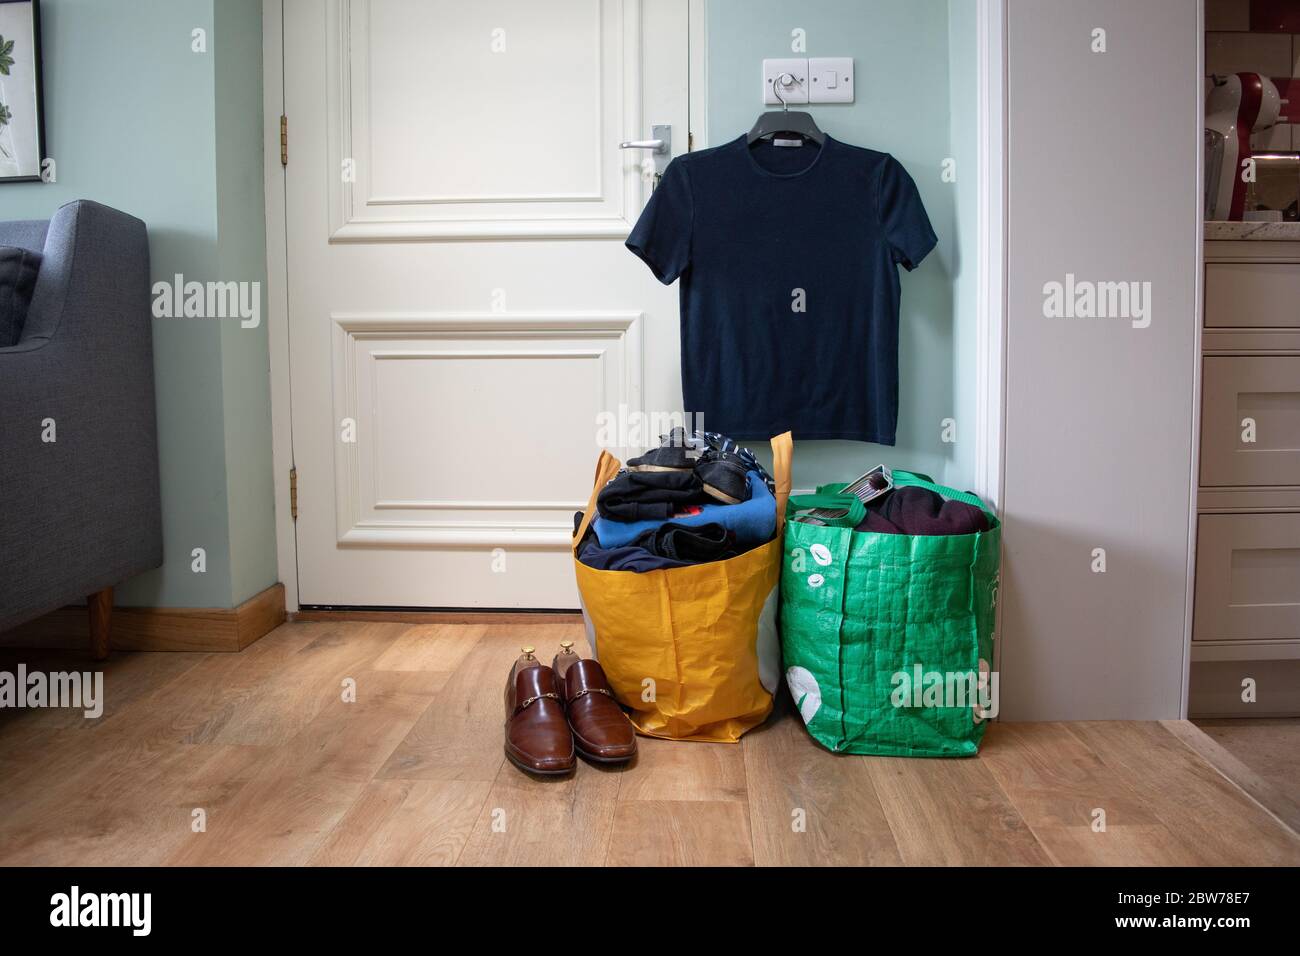 Eine Tasche mit Kleidung und Gegenständen, die darauf warten, an eine Wohltätigkeitsorganisation oder einen Sparladen gespendet zu werden. Stockfoto